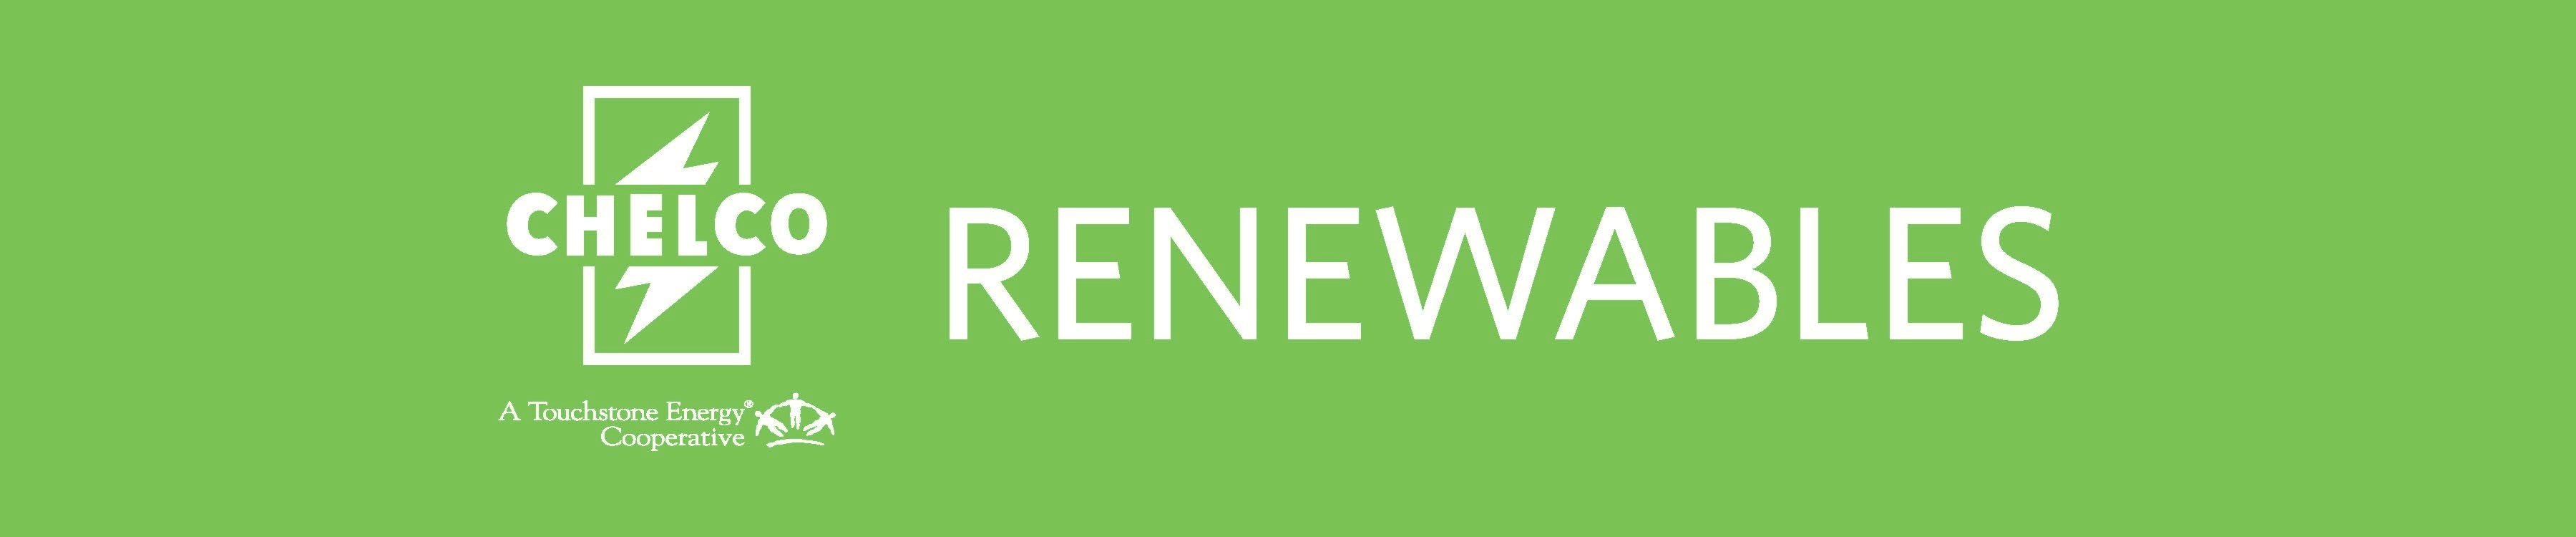 Renewables%20website%20banner.jpg